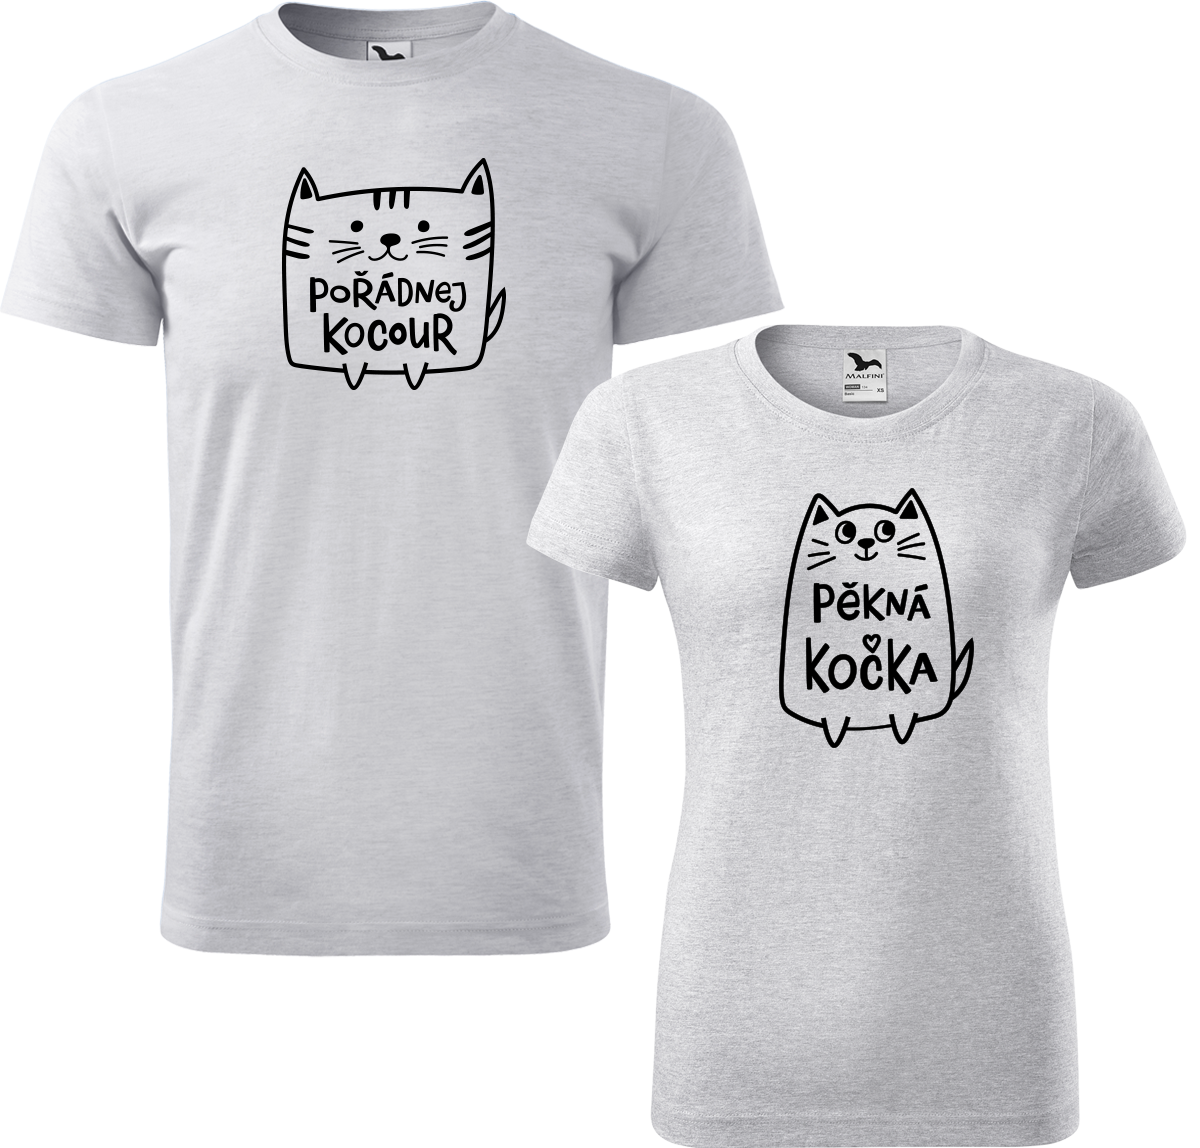 Trička pro páry - Pořádnej kocour a pěkná kočka Barva: Světle šedý melír (03), Velikost dámské tričko: S, Velikost pánské tričko: L